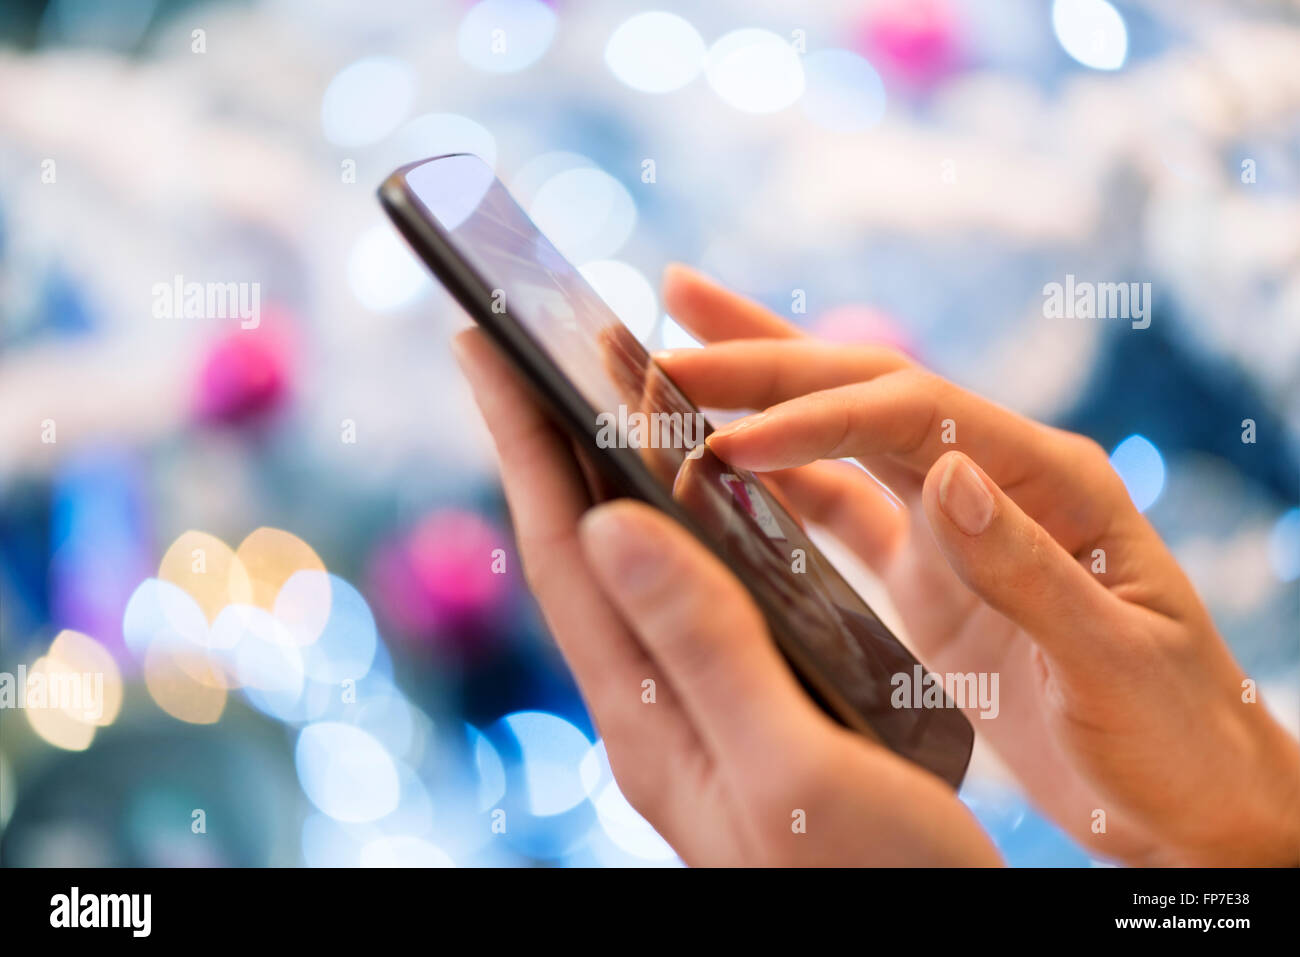 Mujer que utiliza su teléfono móvil en el hogar. Boke árbol de navidad de fondo; App,sms,chat,mensaje,mail,mensajes de texto Foto de stock